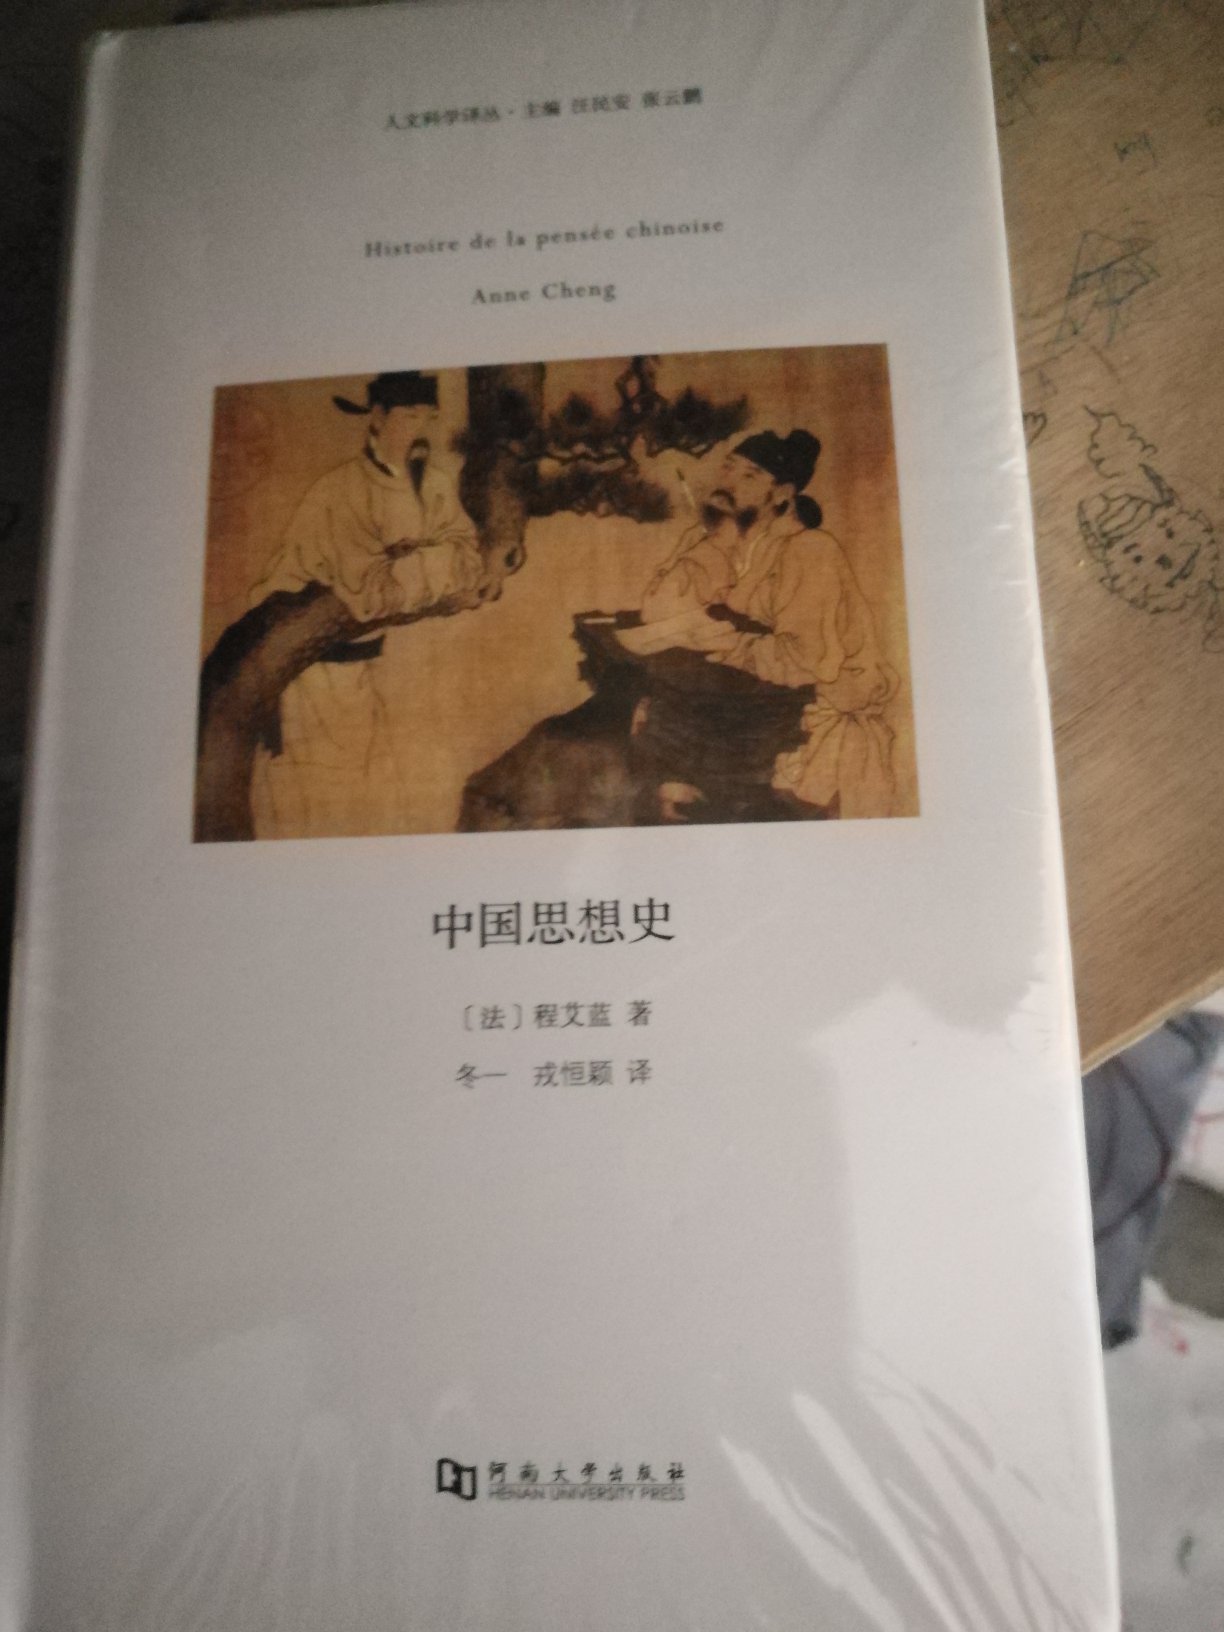 本书是法国知名学者程艾蓝关于中国思想史的著作。曾获1998年西方汉学儒莲奖。